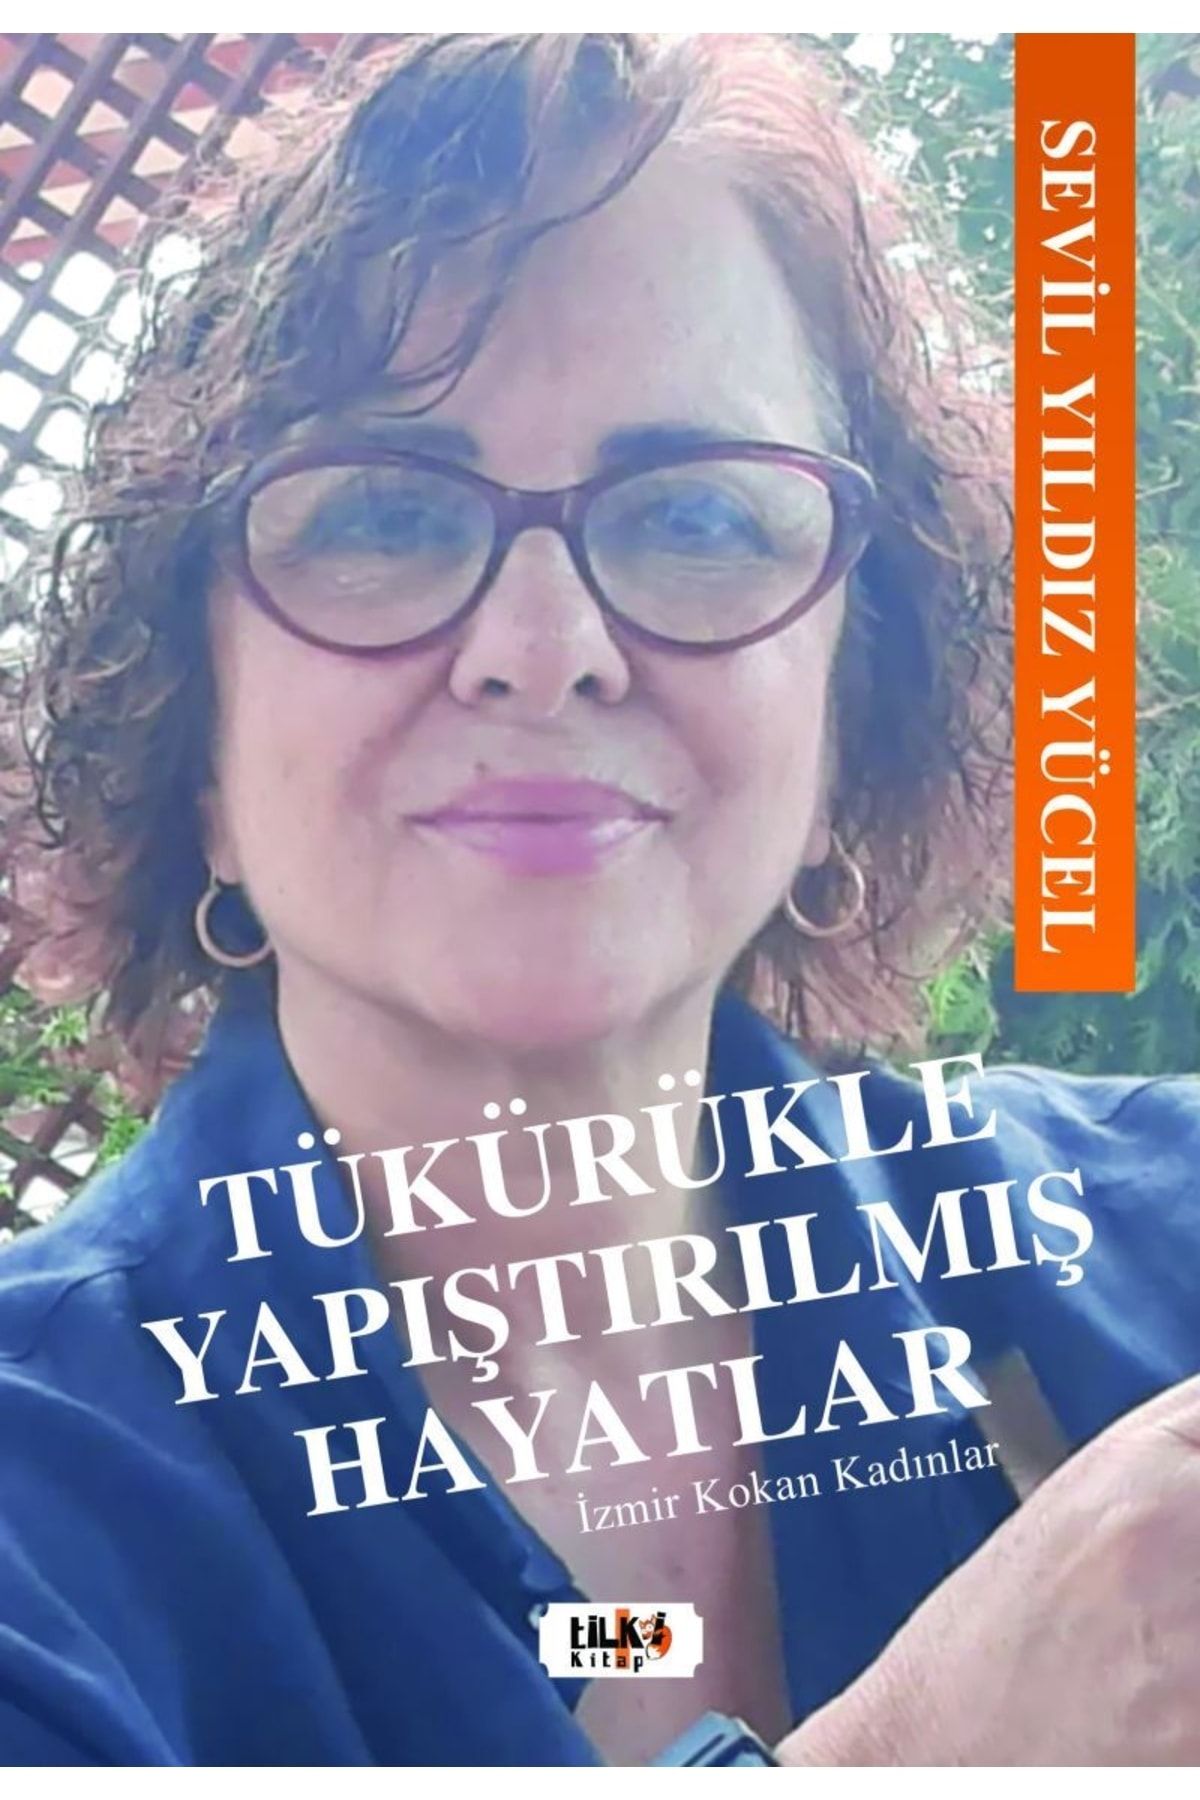 Tilki Kitap Tükürükle Yapıştırılmış Hayatlar - Izmir Kokan Kadınlar Sevil Yıldız Yücel